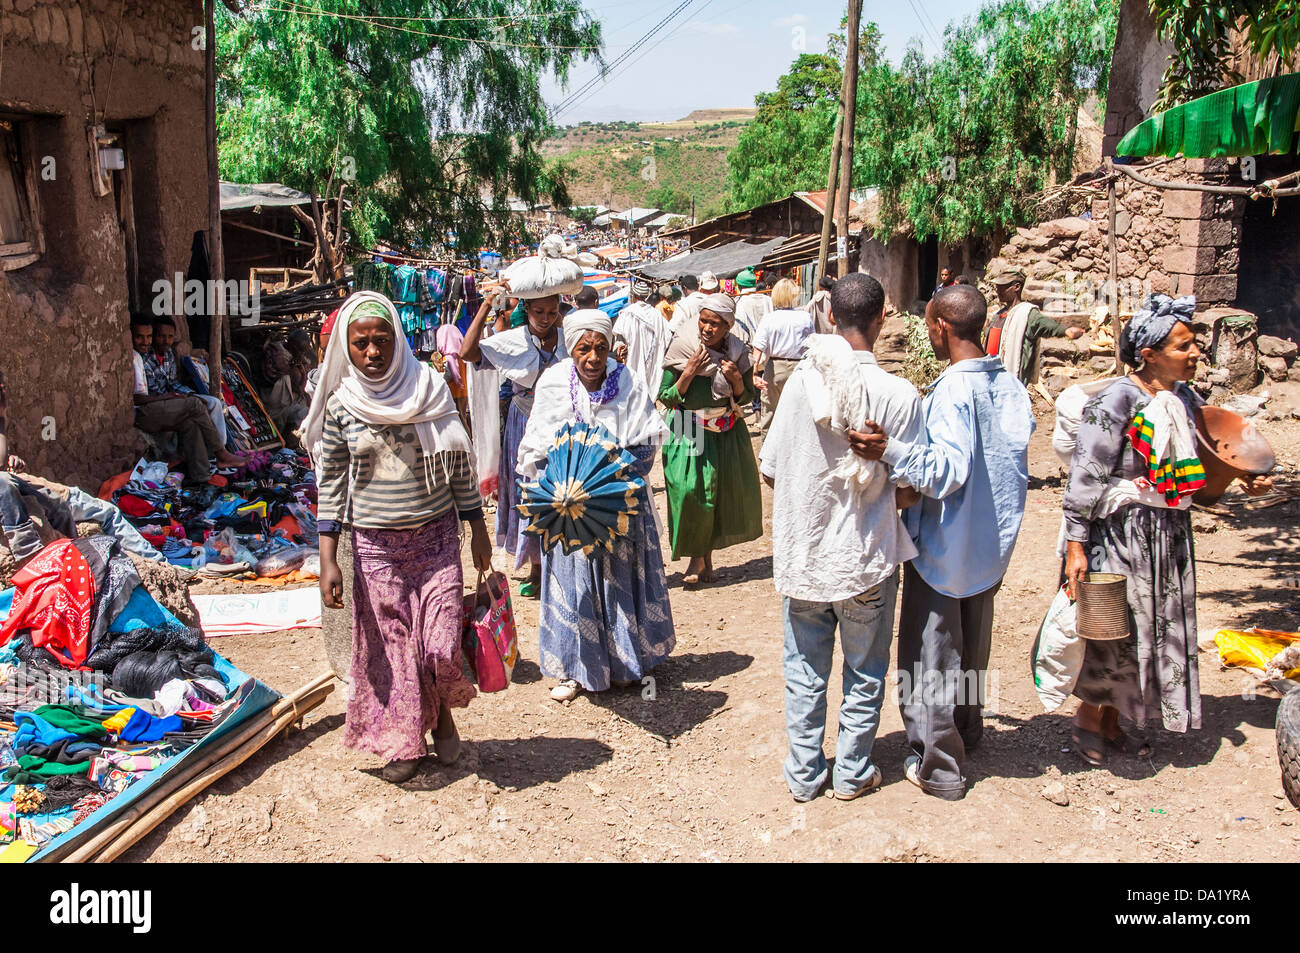 Concurrido mercado de Lalibela, la región de Amhara, en el norte de Etiopía Foto de stock